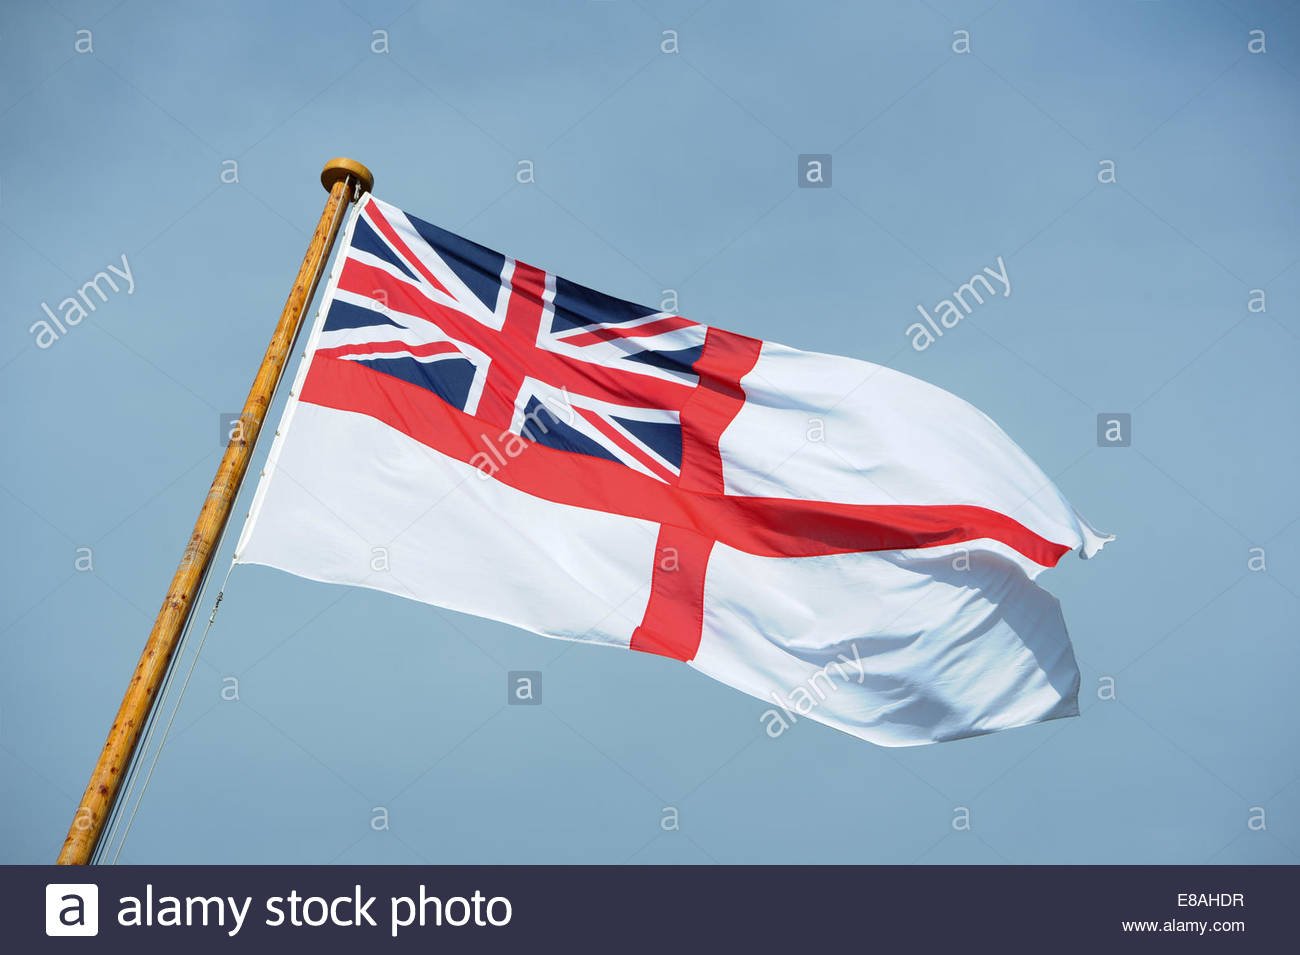 royal-ensign-flag-flying-in-the-wind-against-a-blue-sky-E8AHDR.jpg.888f9745e524180070922d8668208d61.jpg